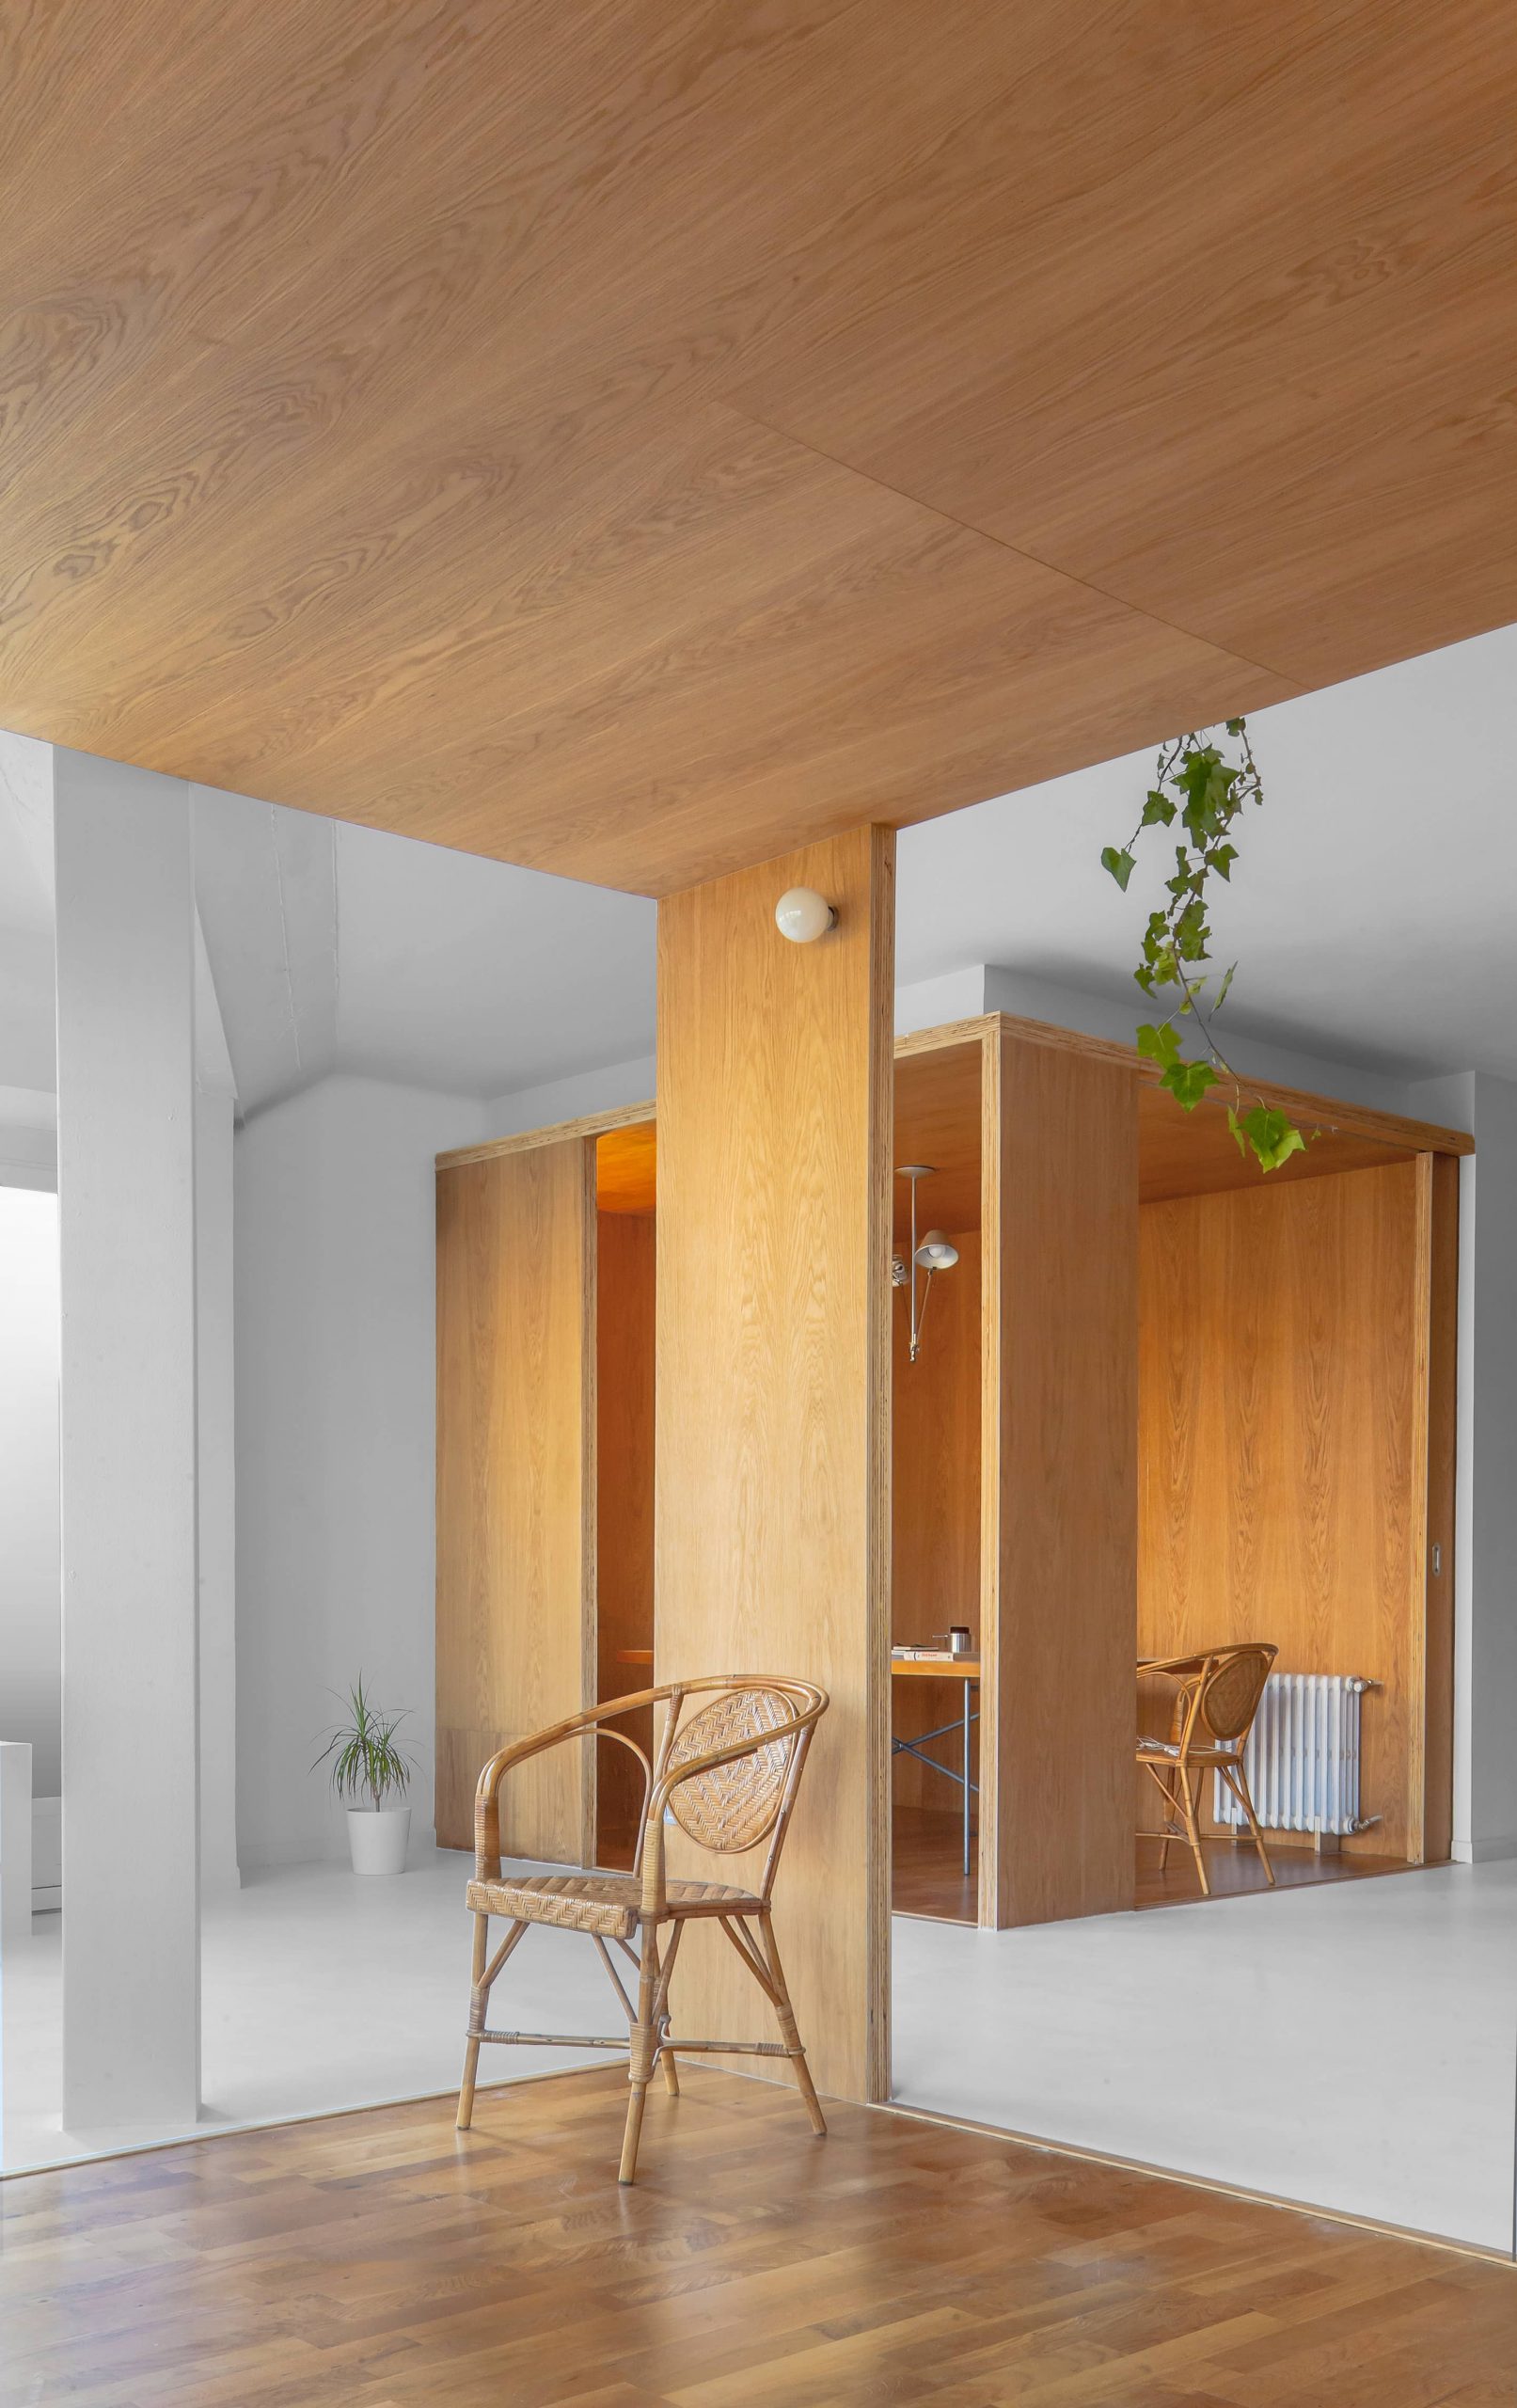 Sala de estar de la rehabilitación arquitectónica del apartamento extenso-intenso en Barcelona